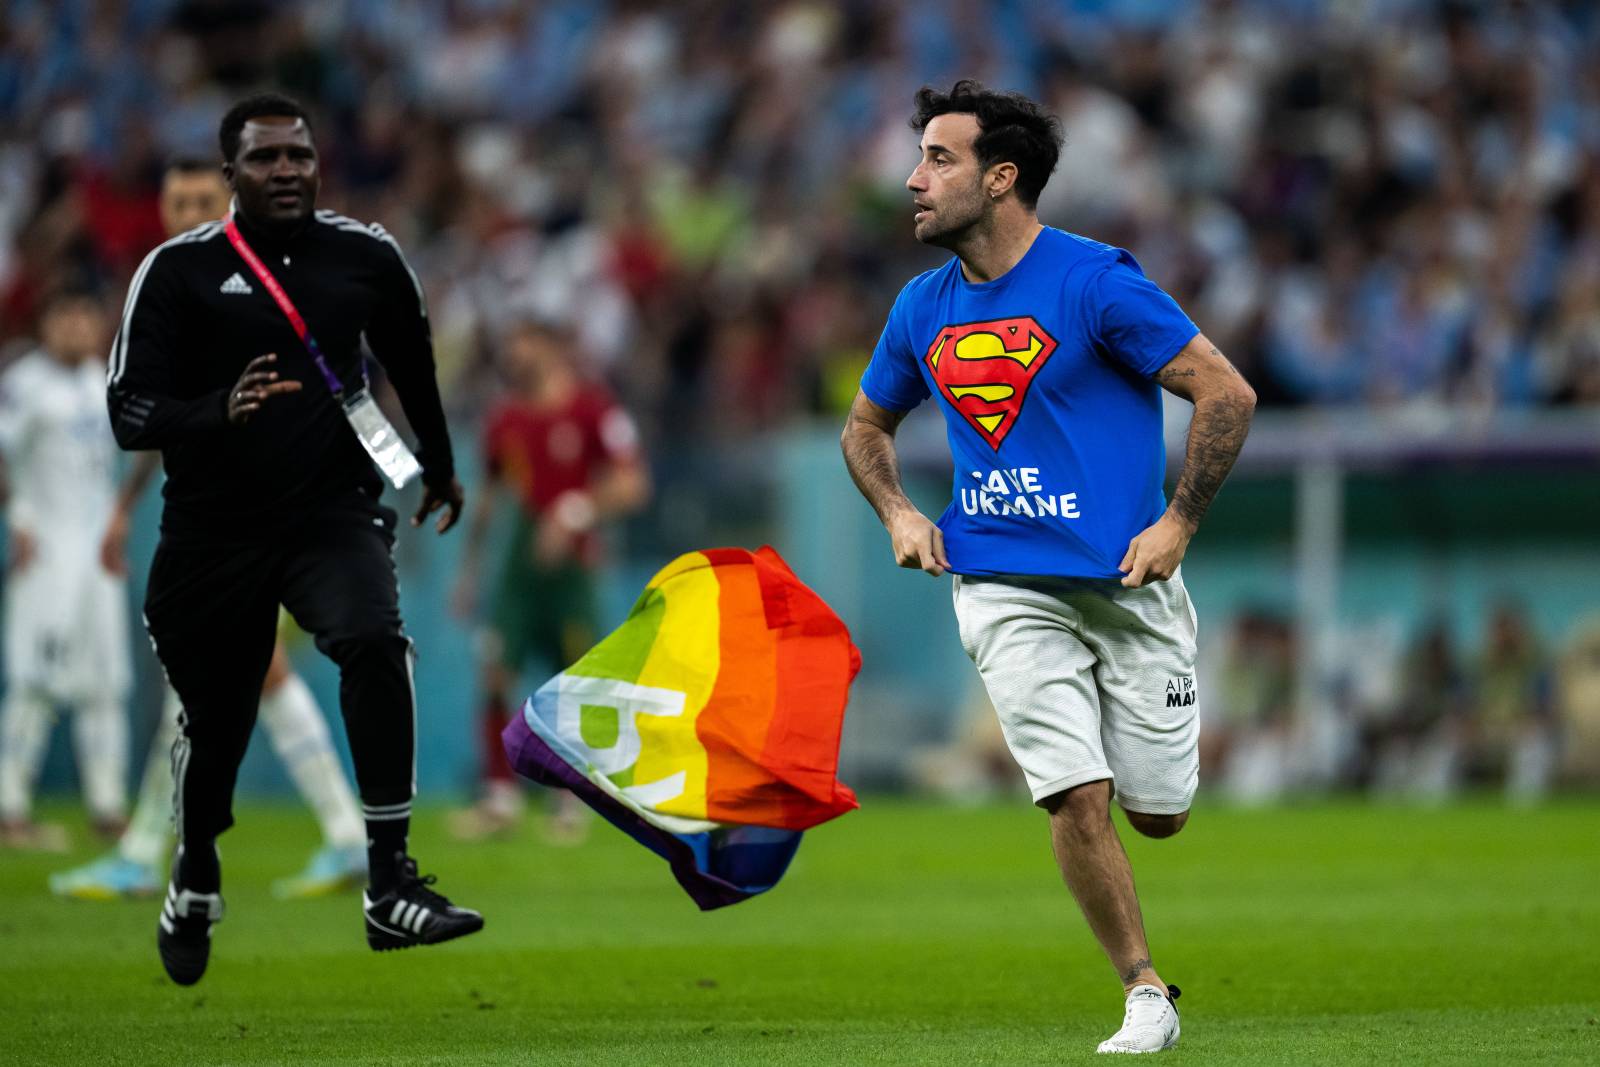 Фанат, который выбежал на поле с радужным флагом, был в футболке с политическим слоганами